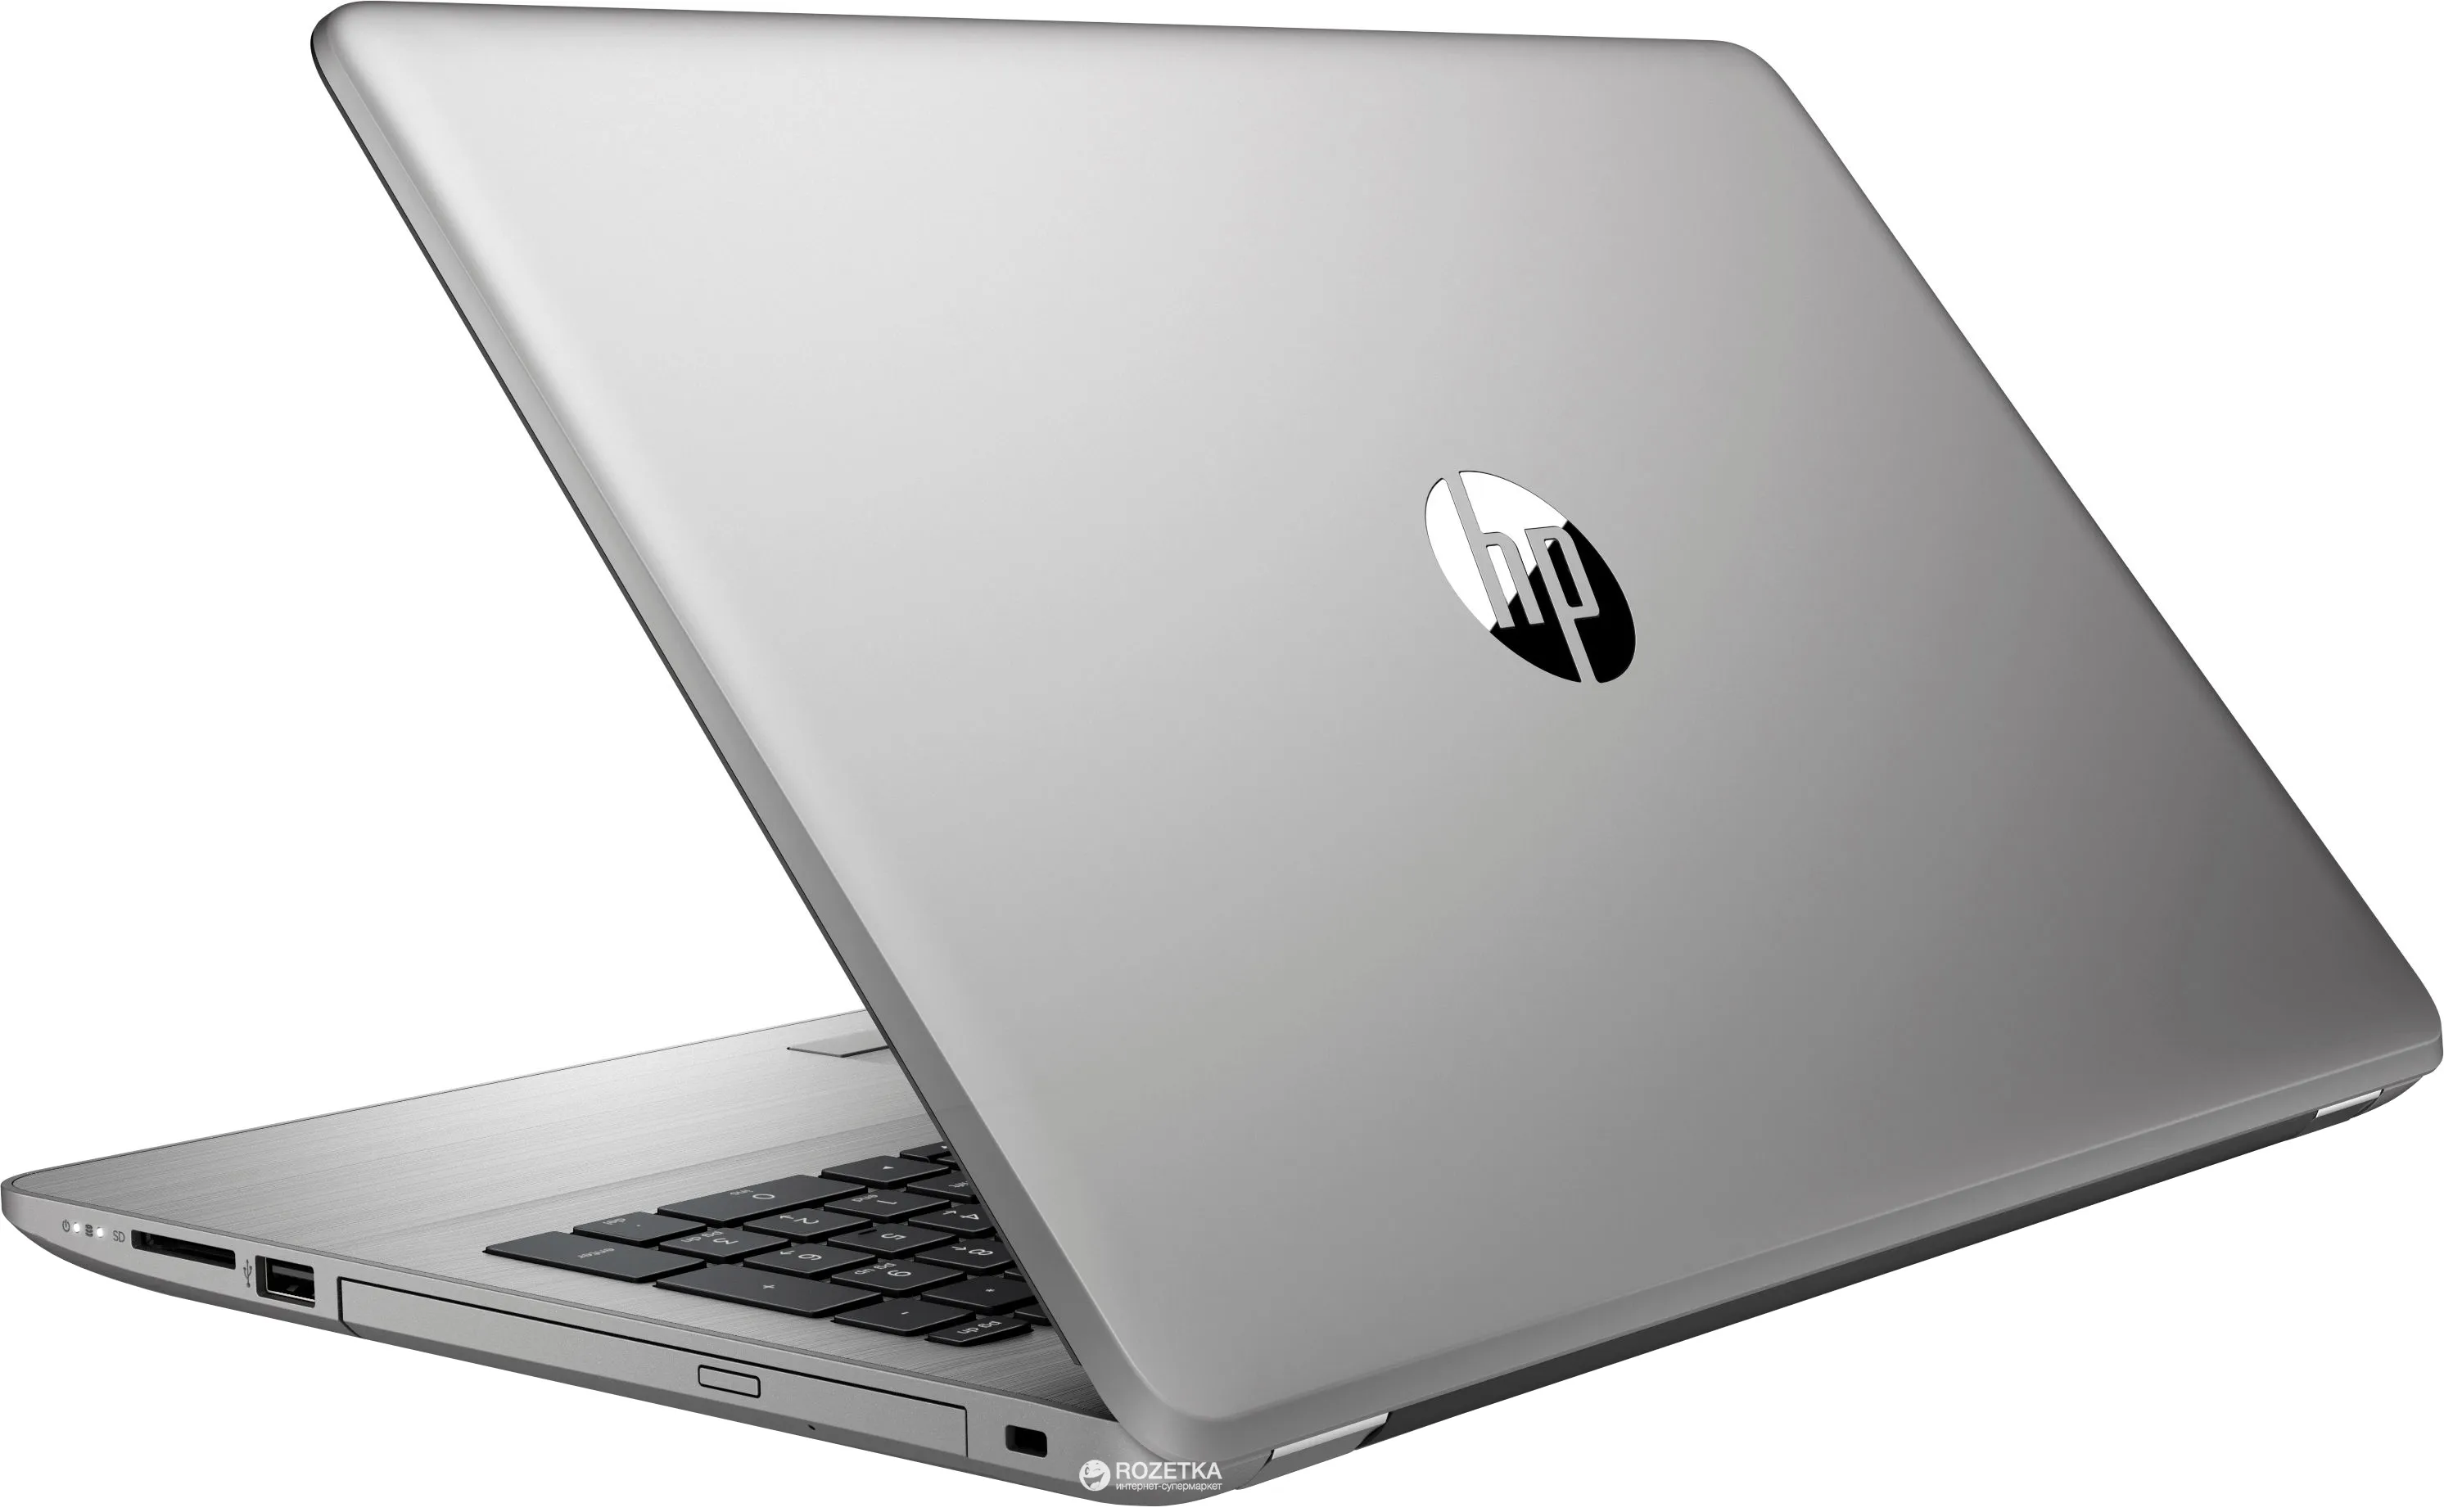 Ноутбук HP 455 G1 /AMD A10-5750/8 GB DDR4/ 500GB HDD /15.6" HD LED/ 2GB AMD Radeon HD 8750M/DVD/RUS+ Bag#9